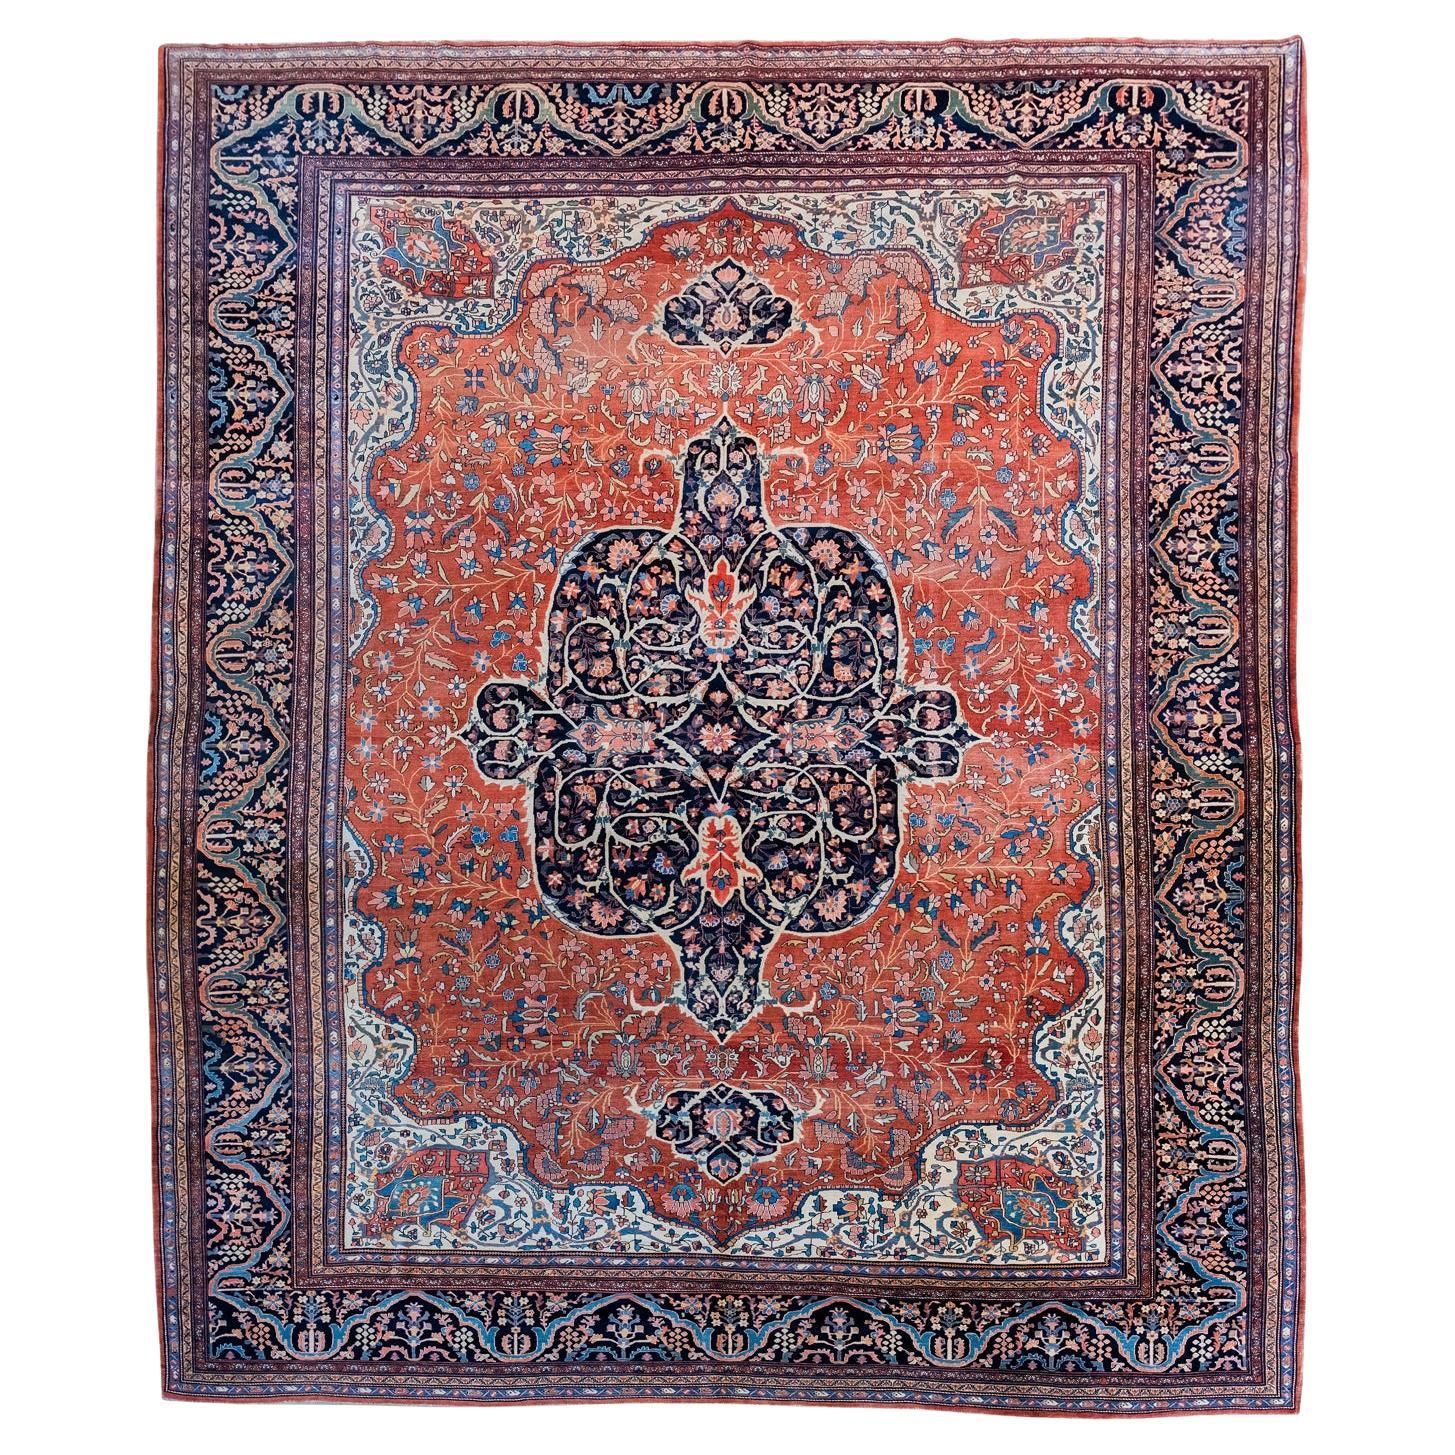 Antique Wool Persian Farahan Carpet, Red, Orange, Indigo, 10’ x 14’